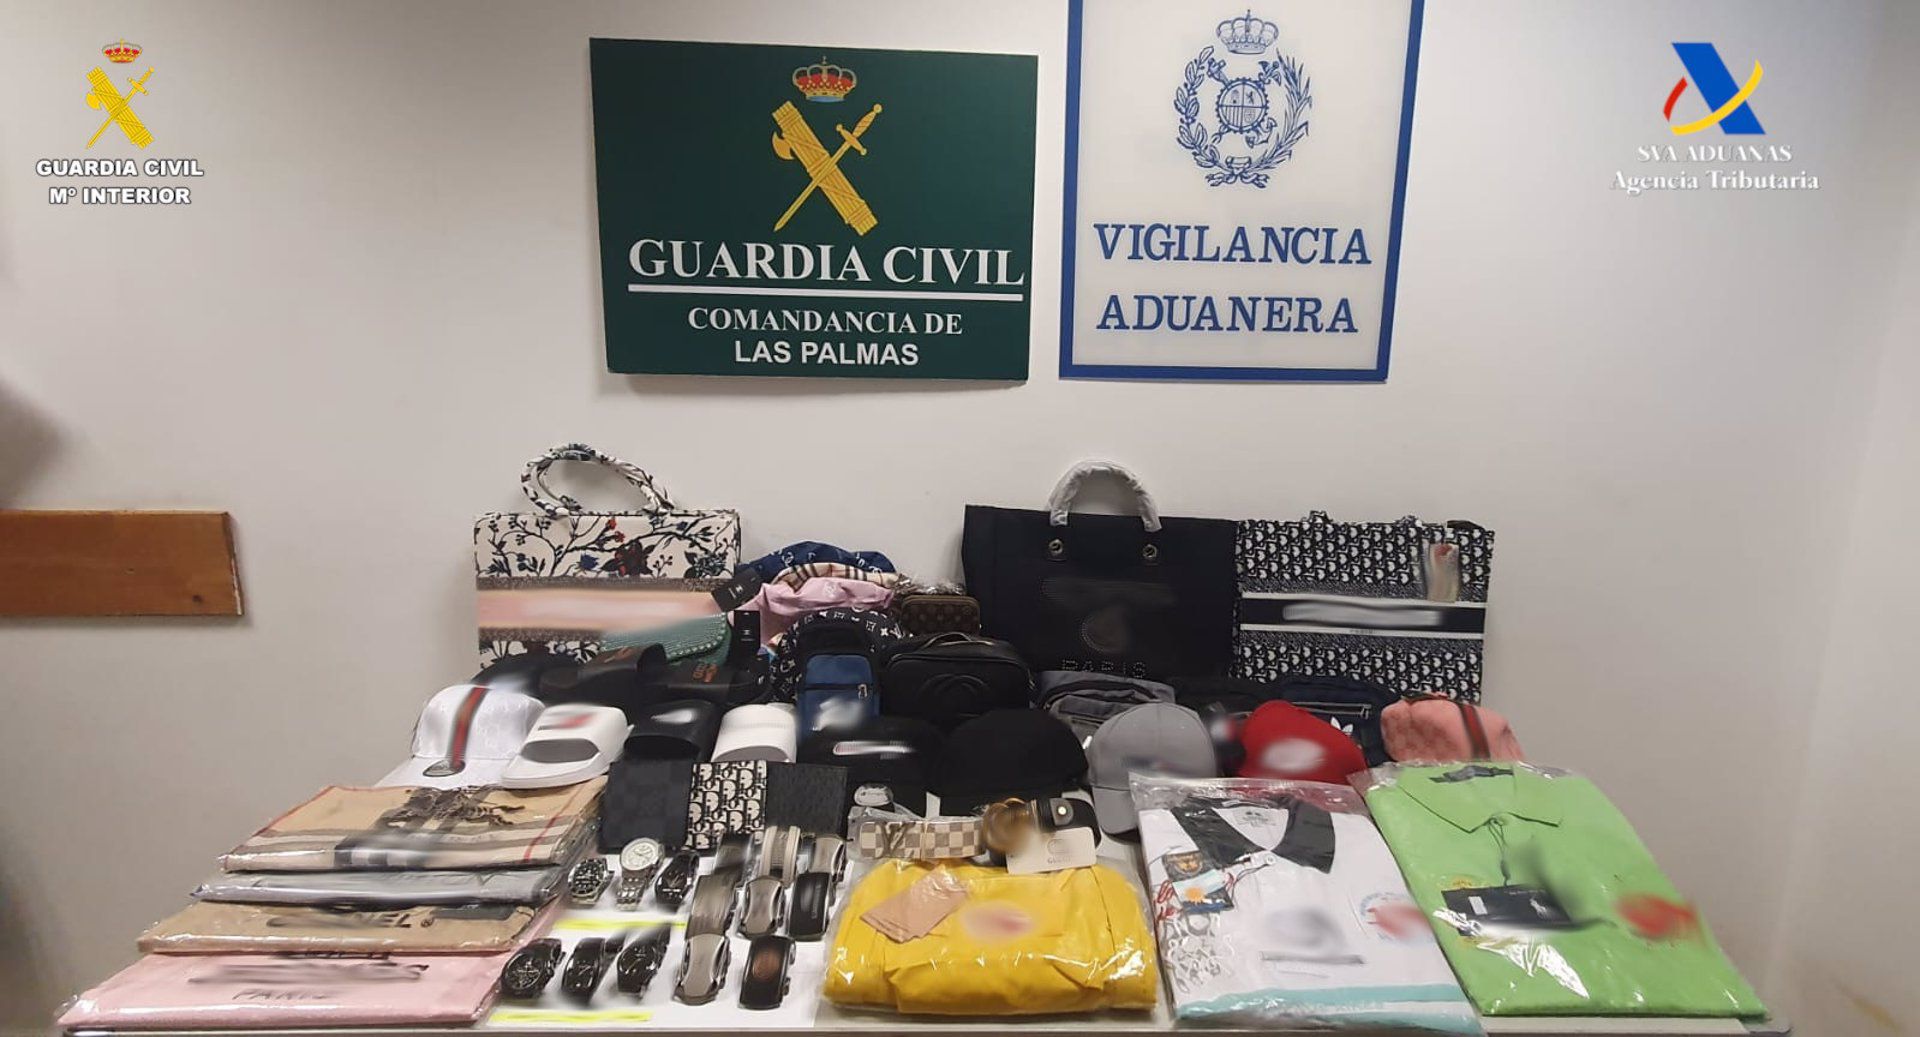 La Agencia Tributaria  informa de la intervención de más 3.550 productos falsificados en el Puerto de Las Palmas